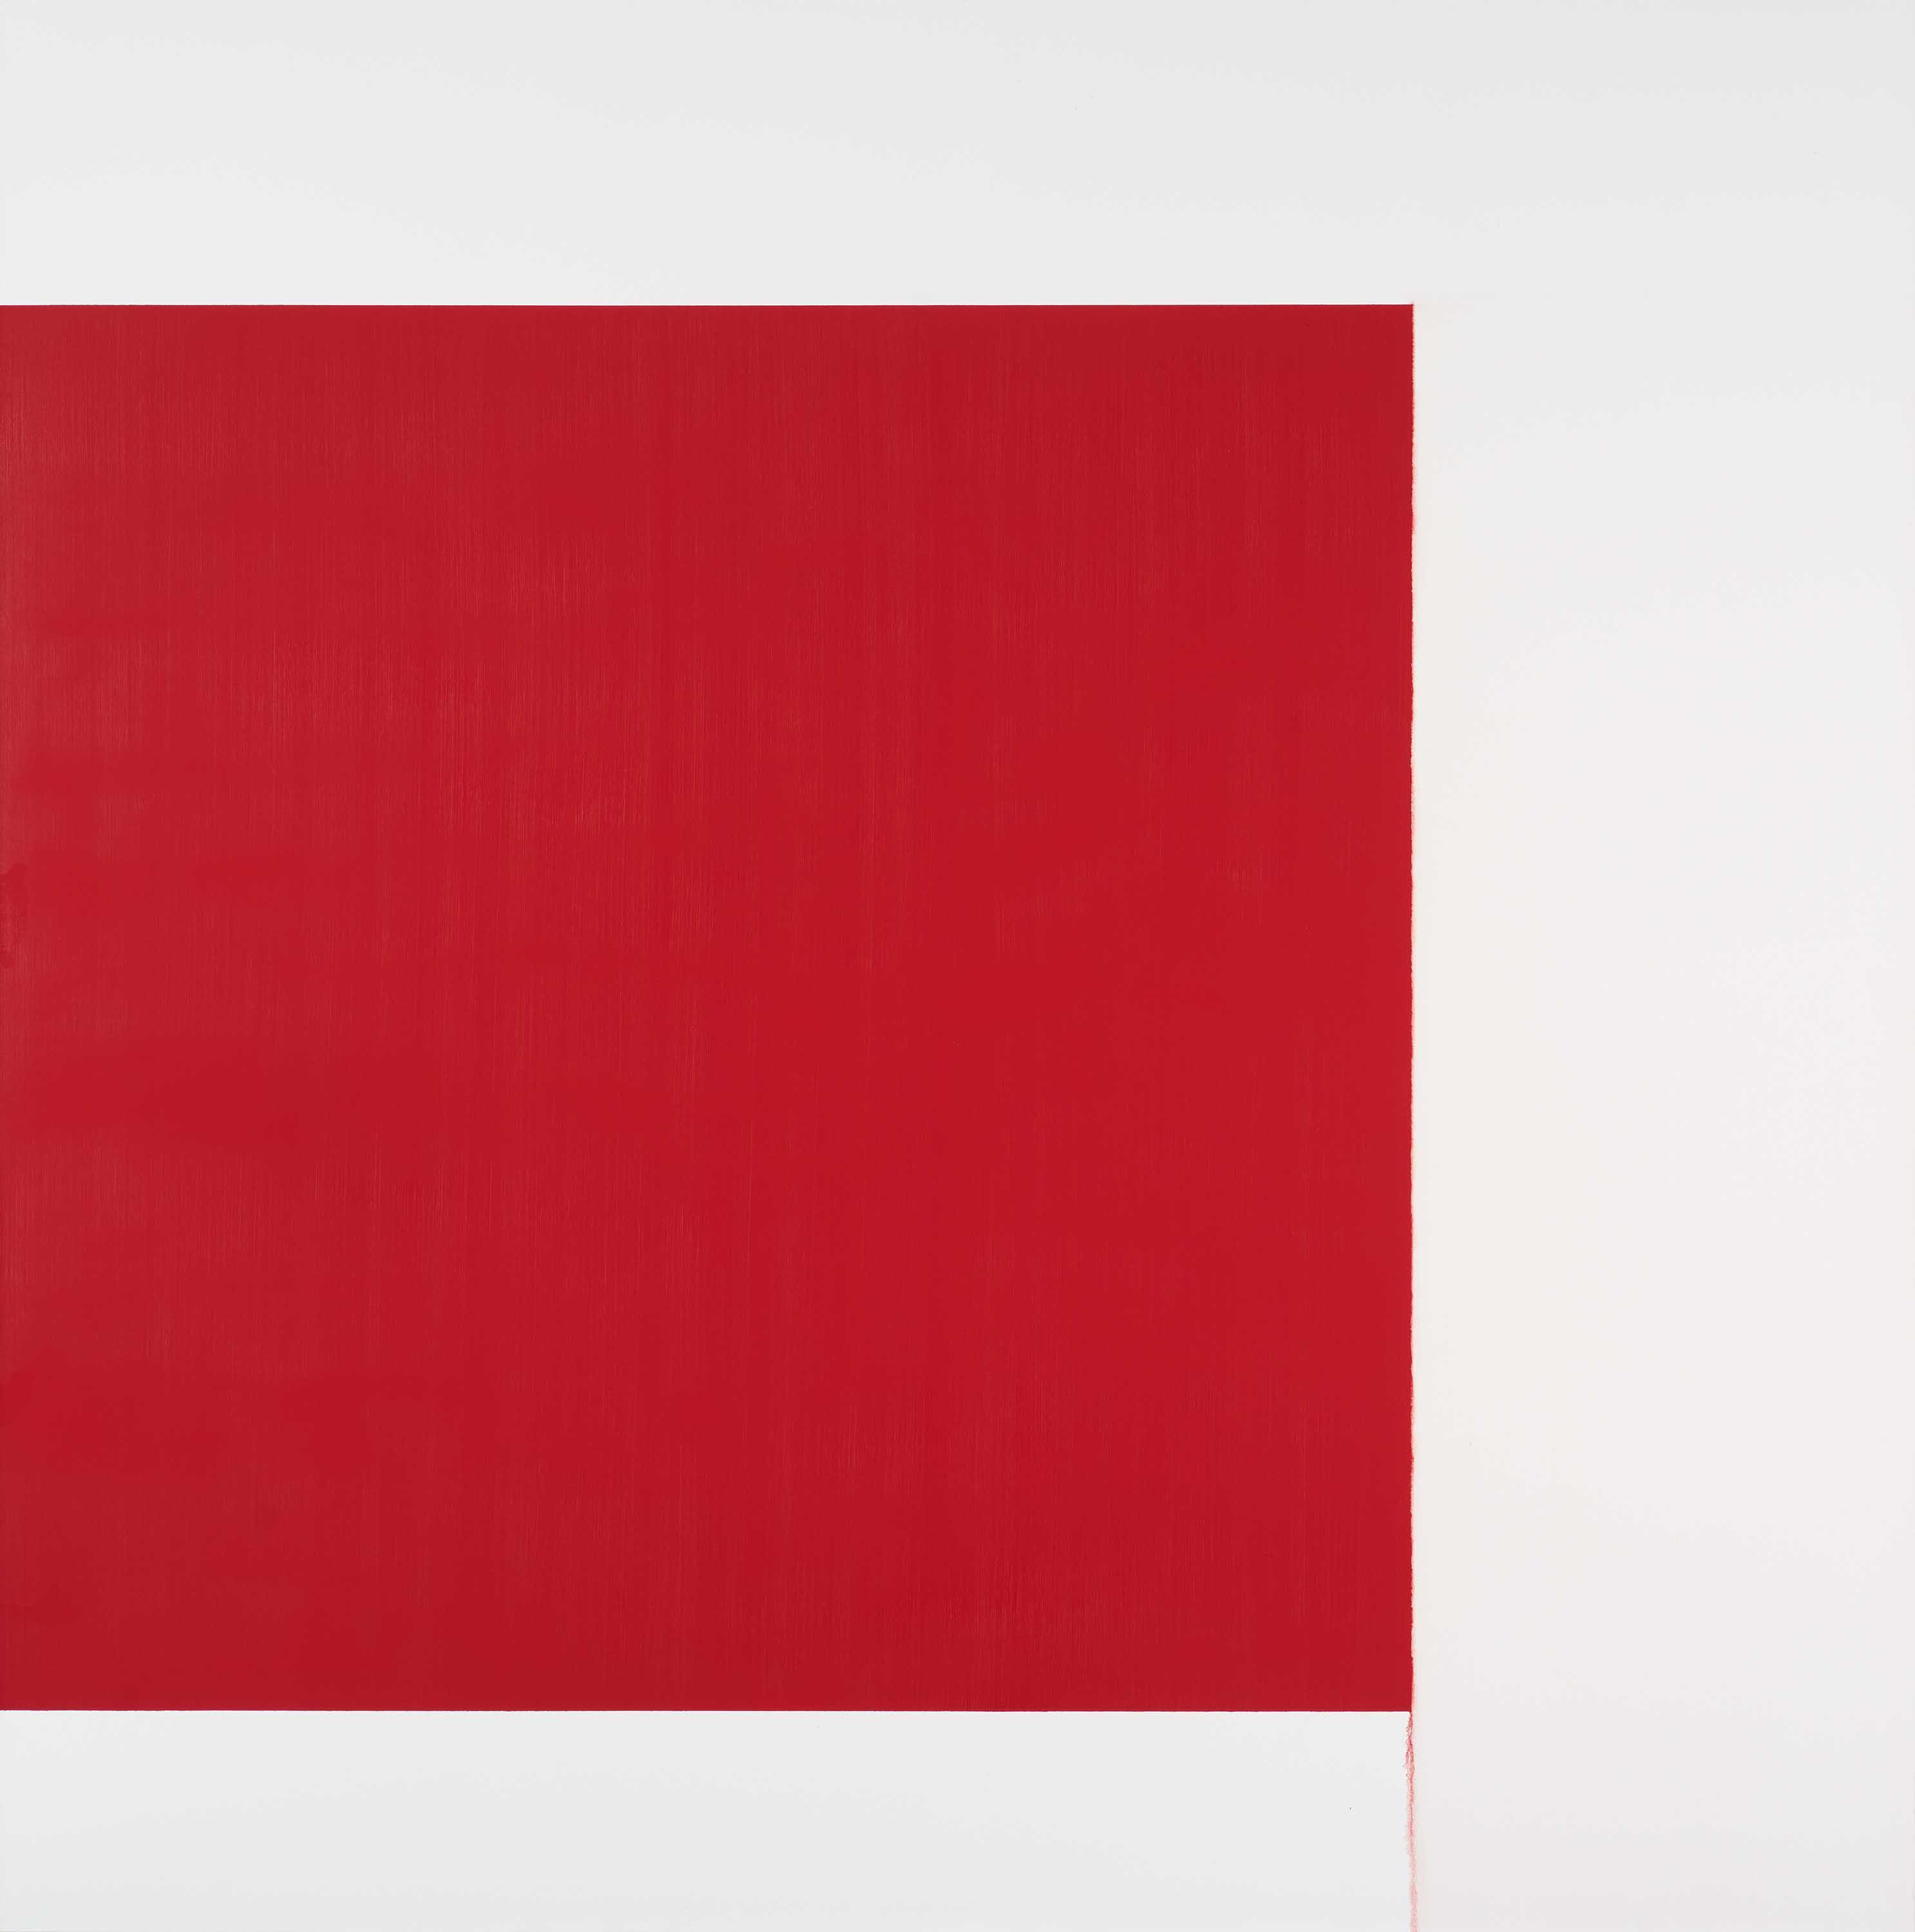 Callum Innes - Exposed Painting - Cadmium Red, 68003-749, Van Ham Kunstauktionen